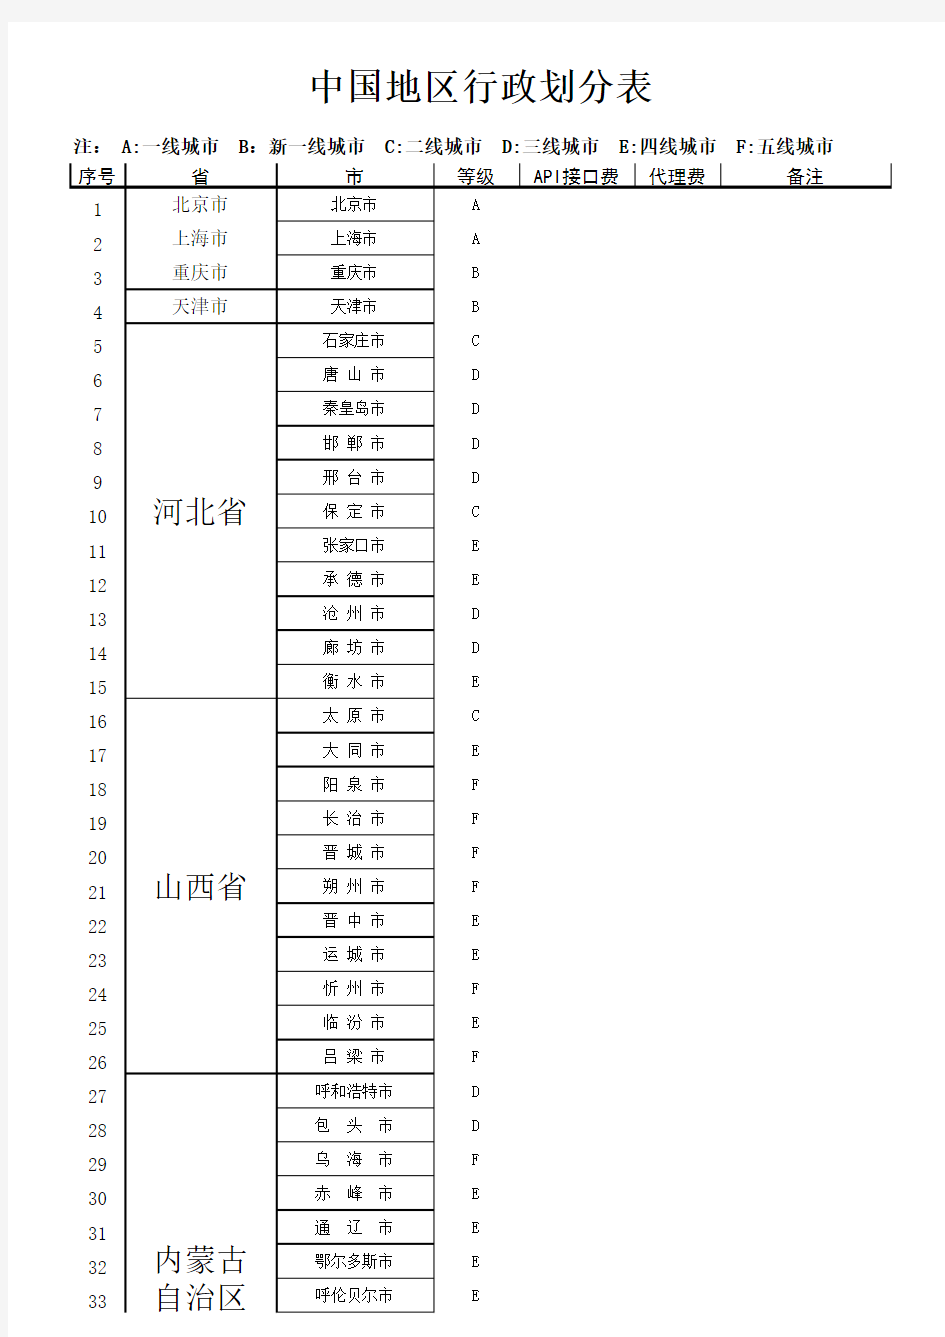 2018年最新中国地区省市县行政划分表